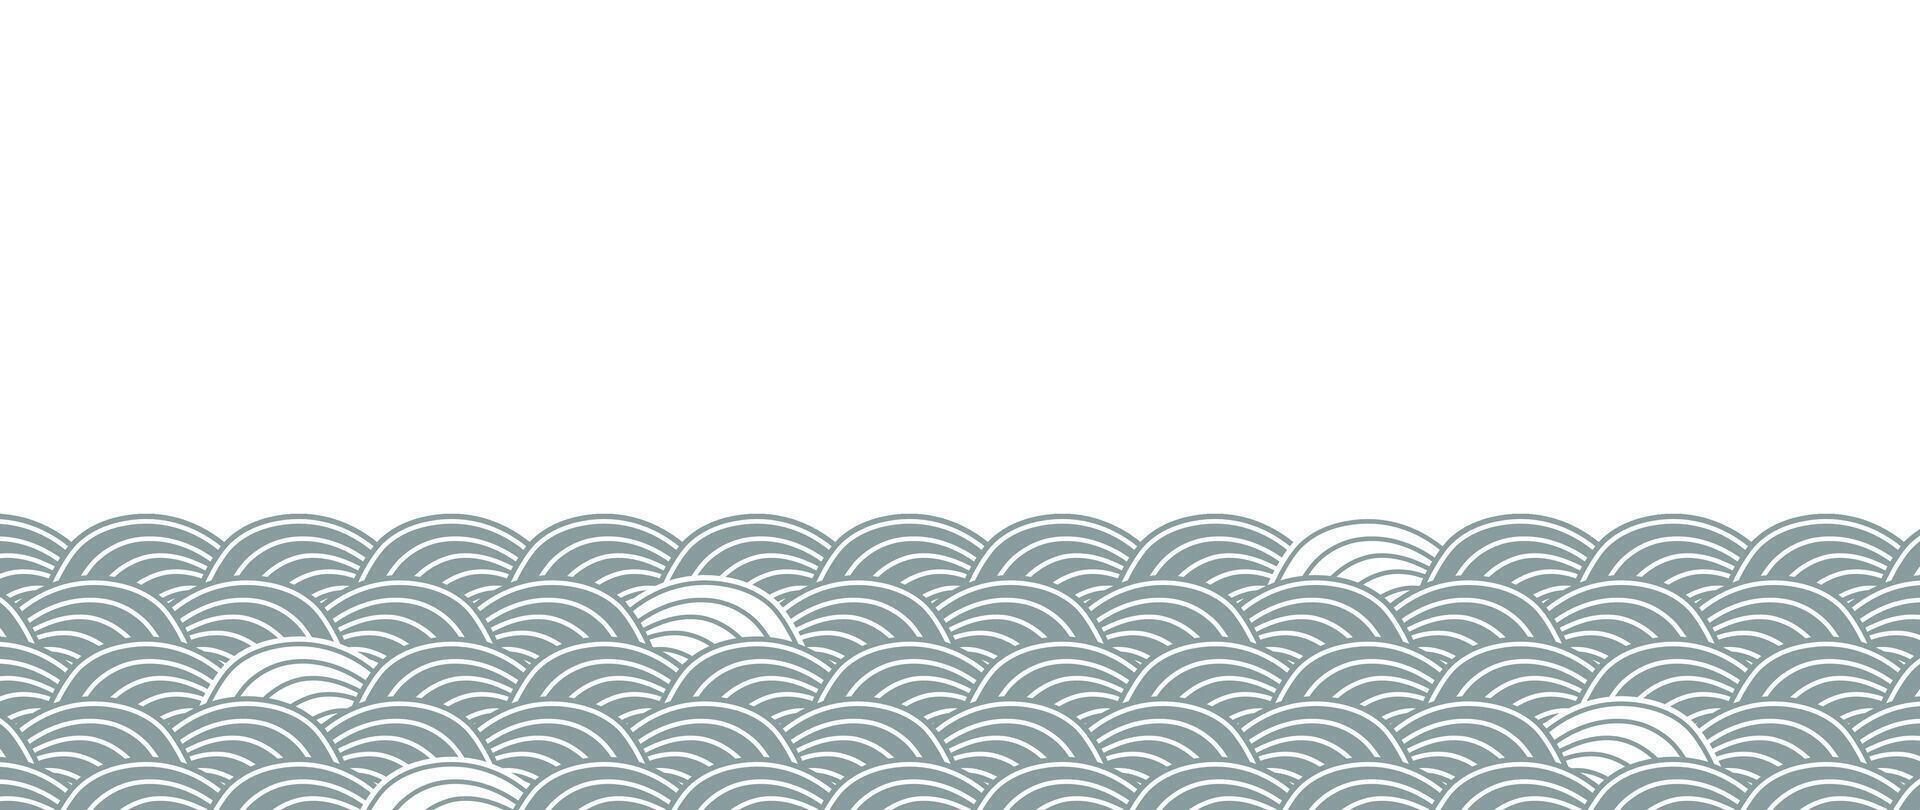 Japans grijs Golf achtergrond vector. behang ontwerp met grijs en wit oceaan Golf patroon achtergrond. modern luxe oosters illustratie voor omslag, banier, website, decor, grens. vector